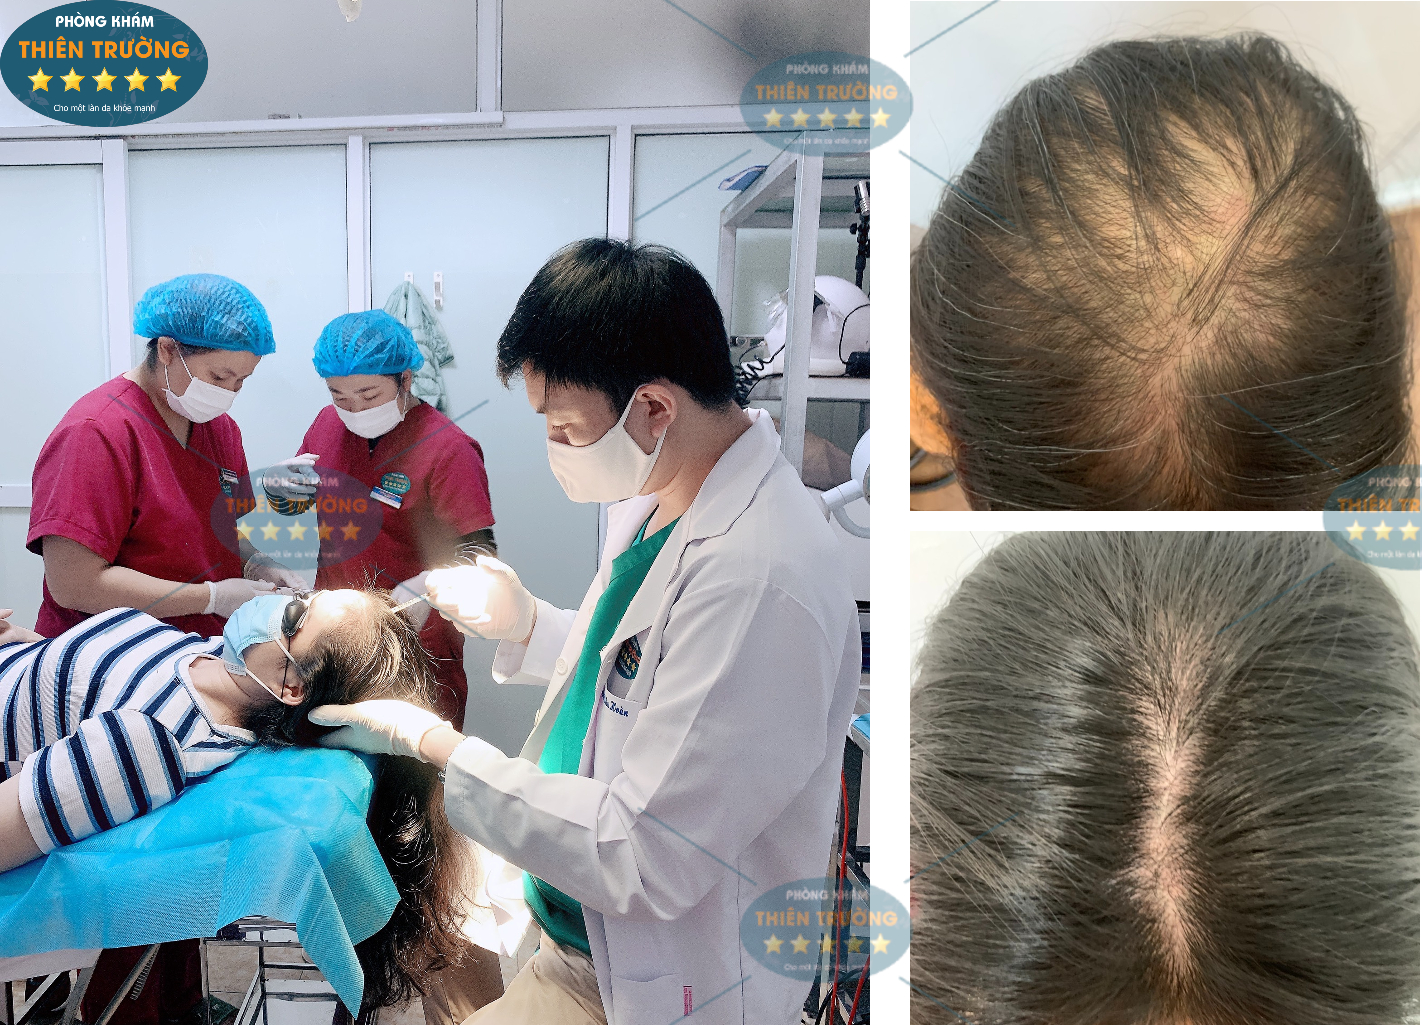 Hình ảnh: Thạc sĩ – Bác sĩ Nguyễn Văn Hoàn đang hỗ trợ điều trị rụng tóc cho bệnh nhân.